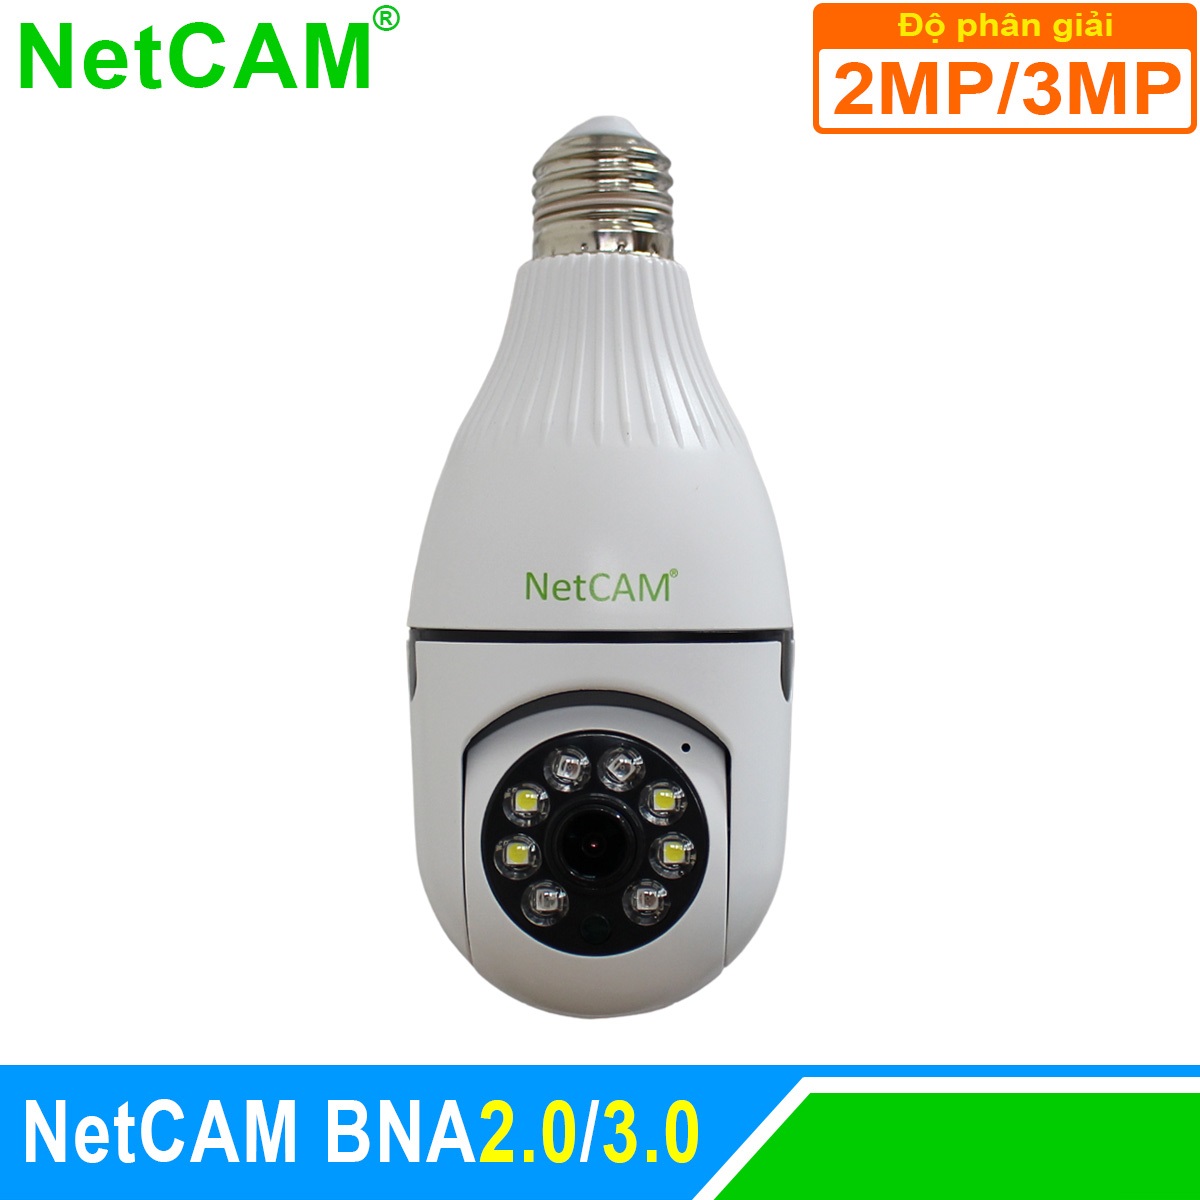 Camera IP WiFi Giám Sát An Ninh NetCAM BNA2.0 / BNA3.0, Quay quét 360 độ, Độ phân giải 2.0MP và 3.0MP - Hàng Chính Hãng